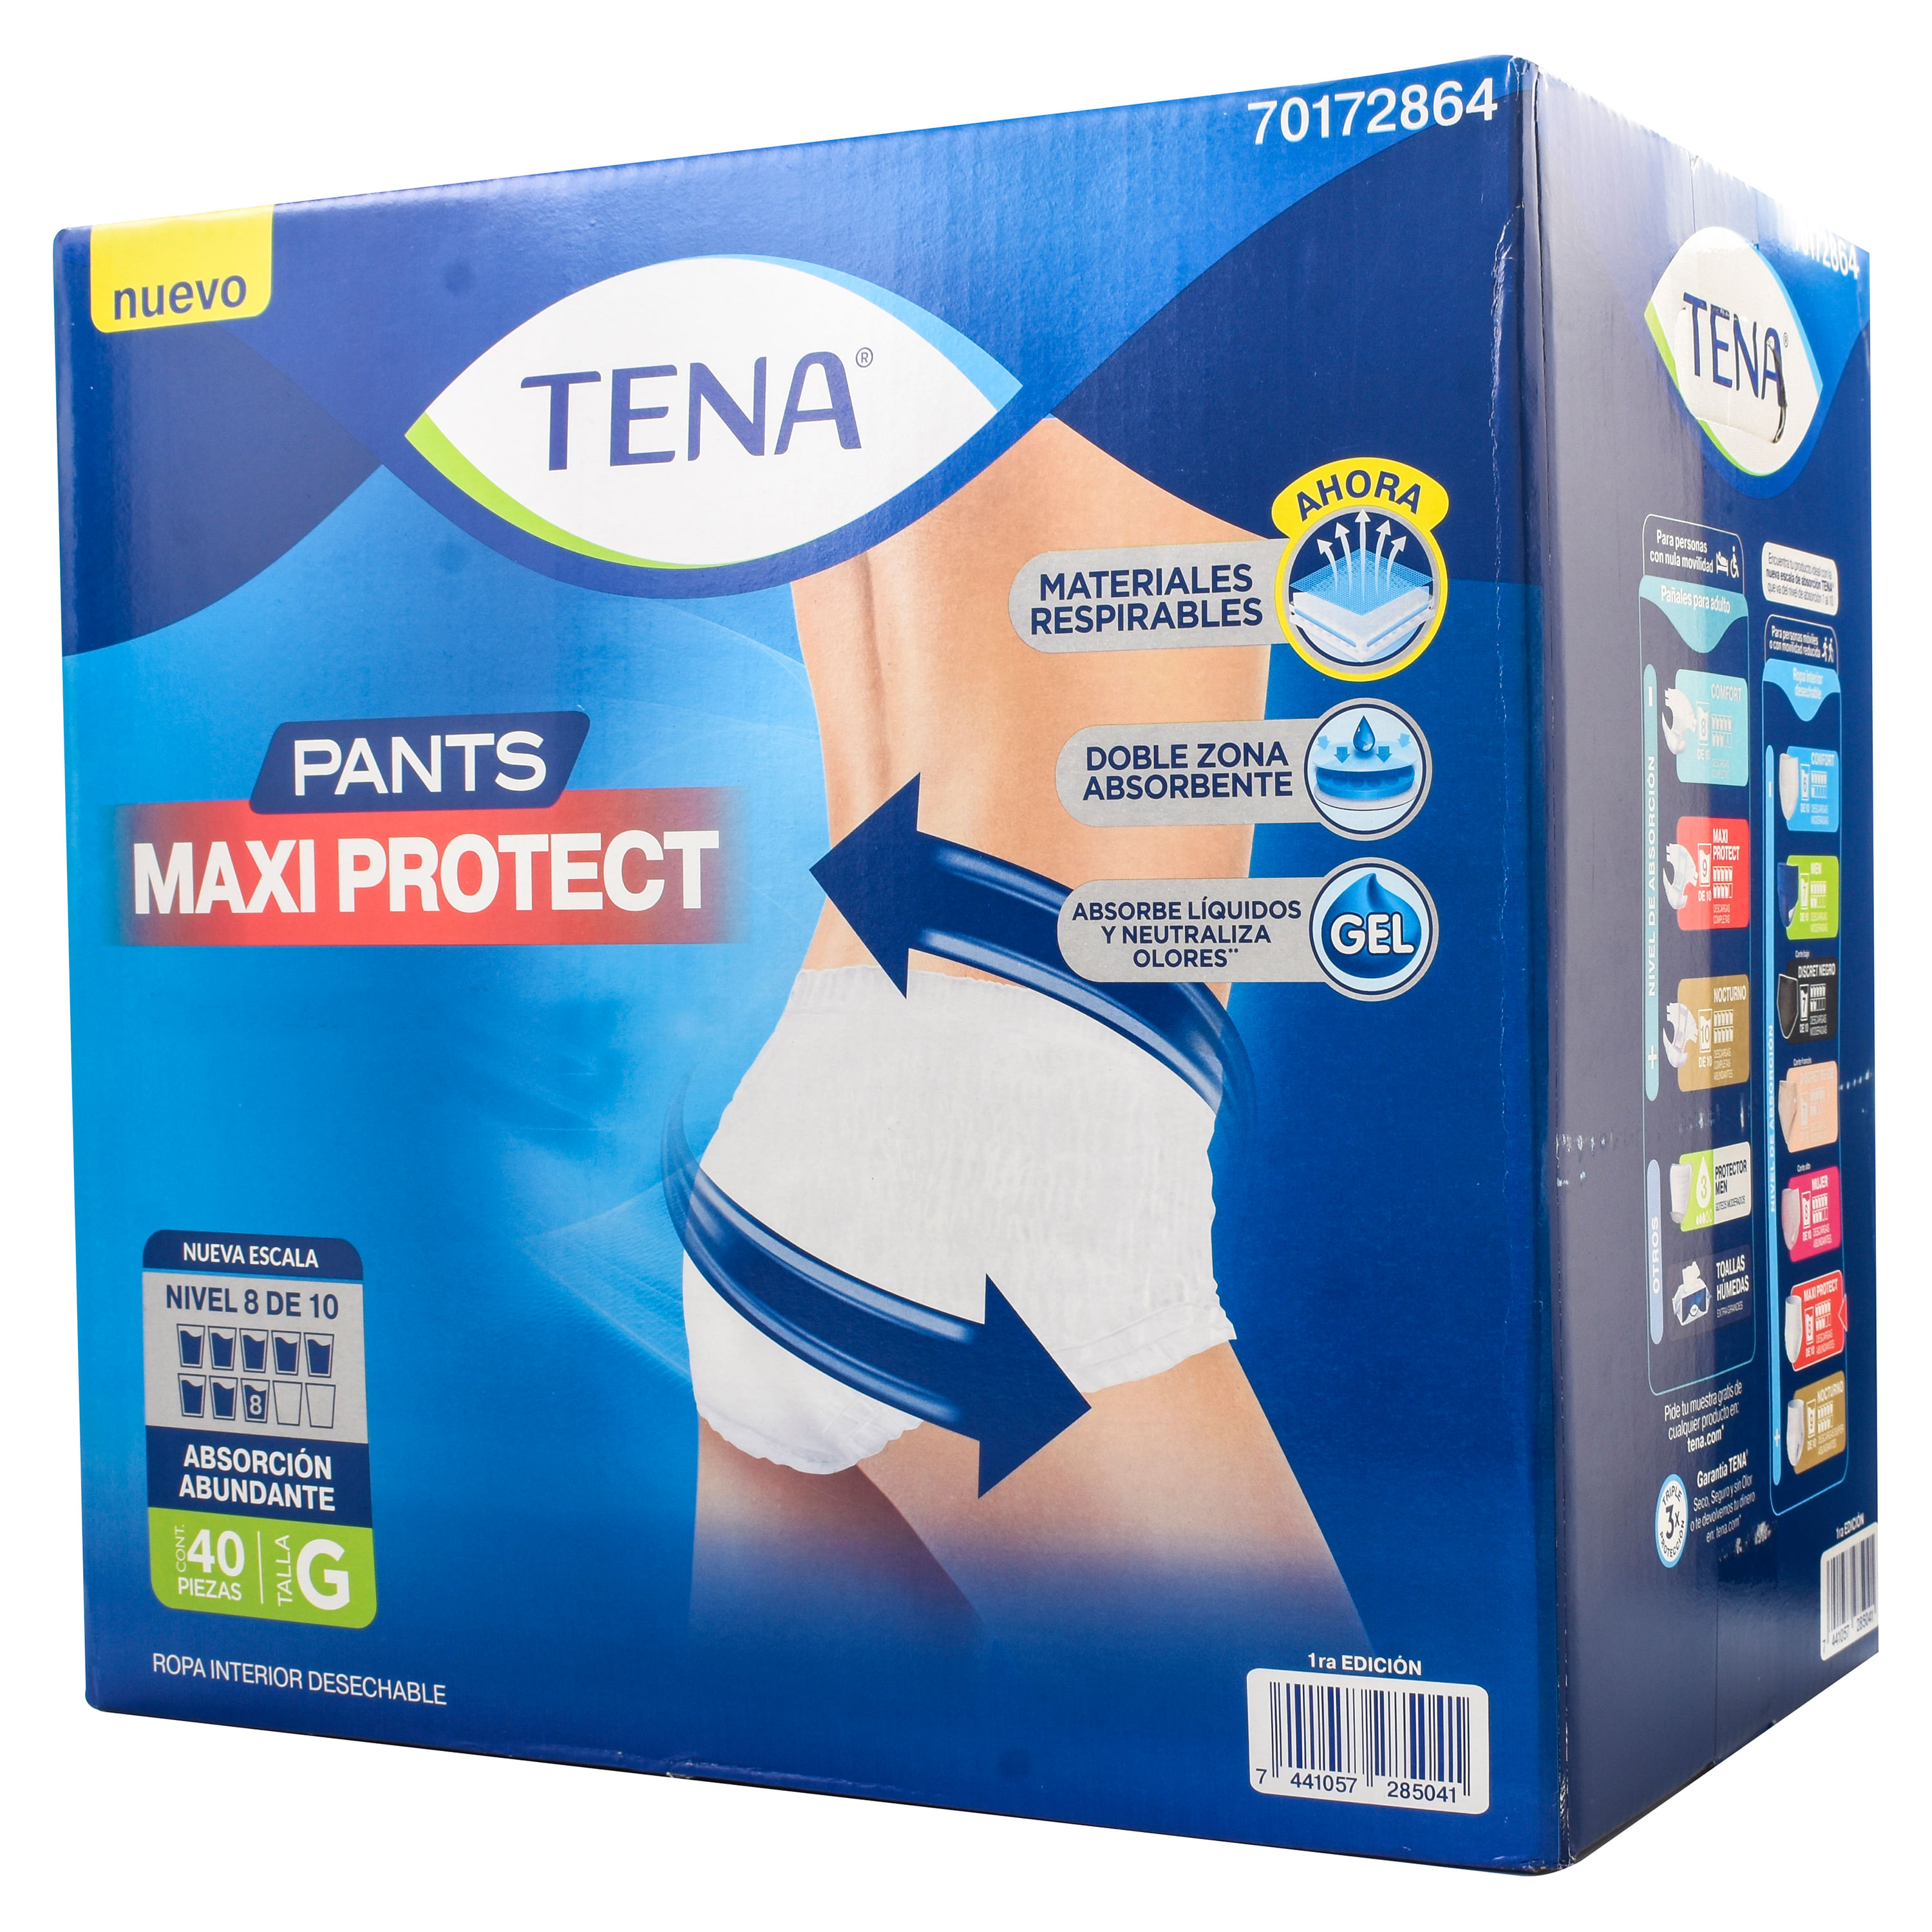 Tena-Pants-Maxi-Protec-G-40-Unidades-1-68116